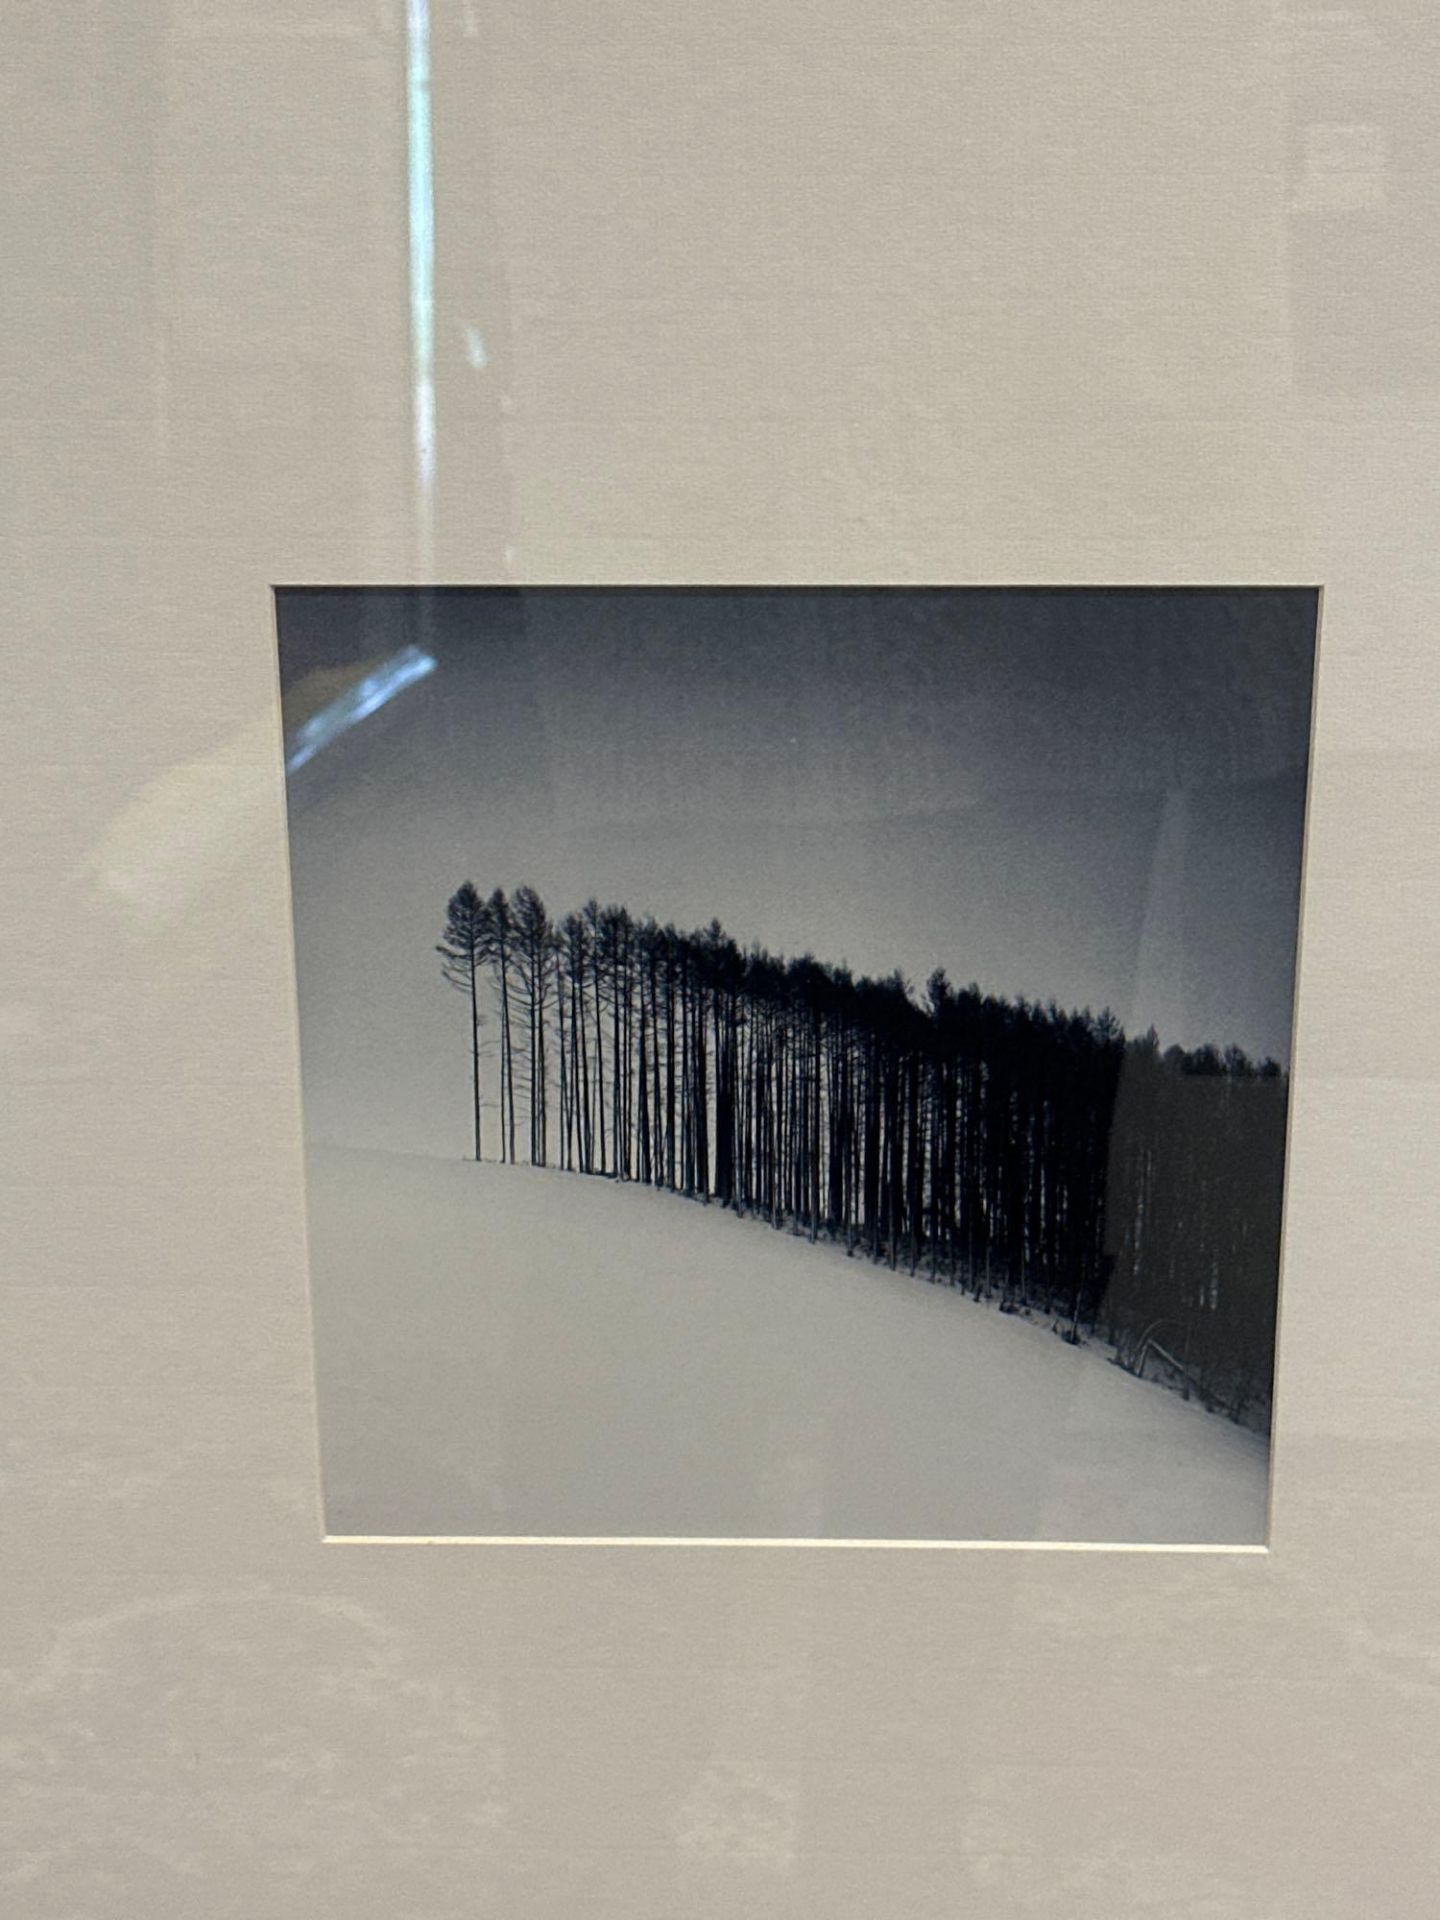 Framed Michael Kenna Landscape Monochrome Print Mounted In Glazed Black Oak Frame 64 x 86cm (CV38) - Image 2 of 2